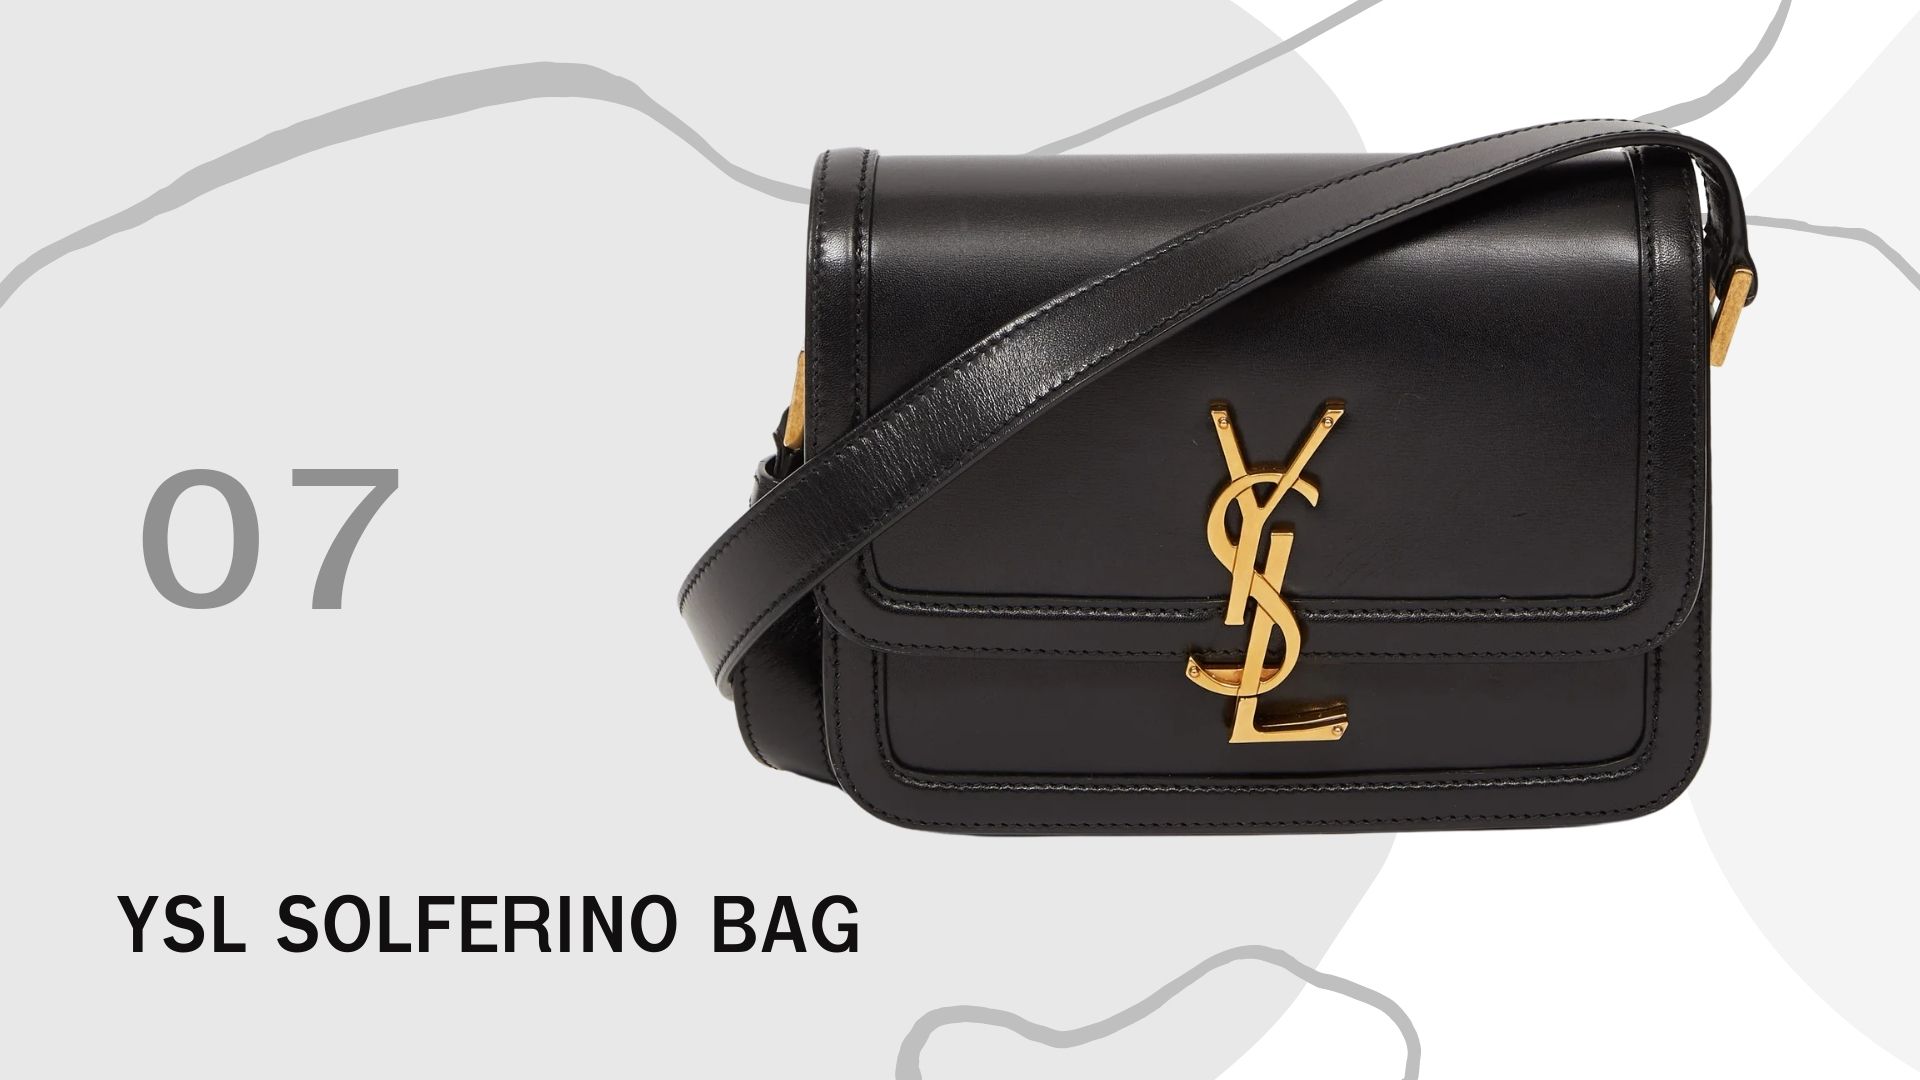 รวม 10 กระเป๋า ที่มาแรงทั้งหมดในปี 2020 นี้ YSL Solferino Bag